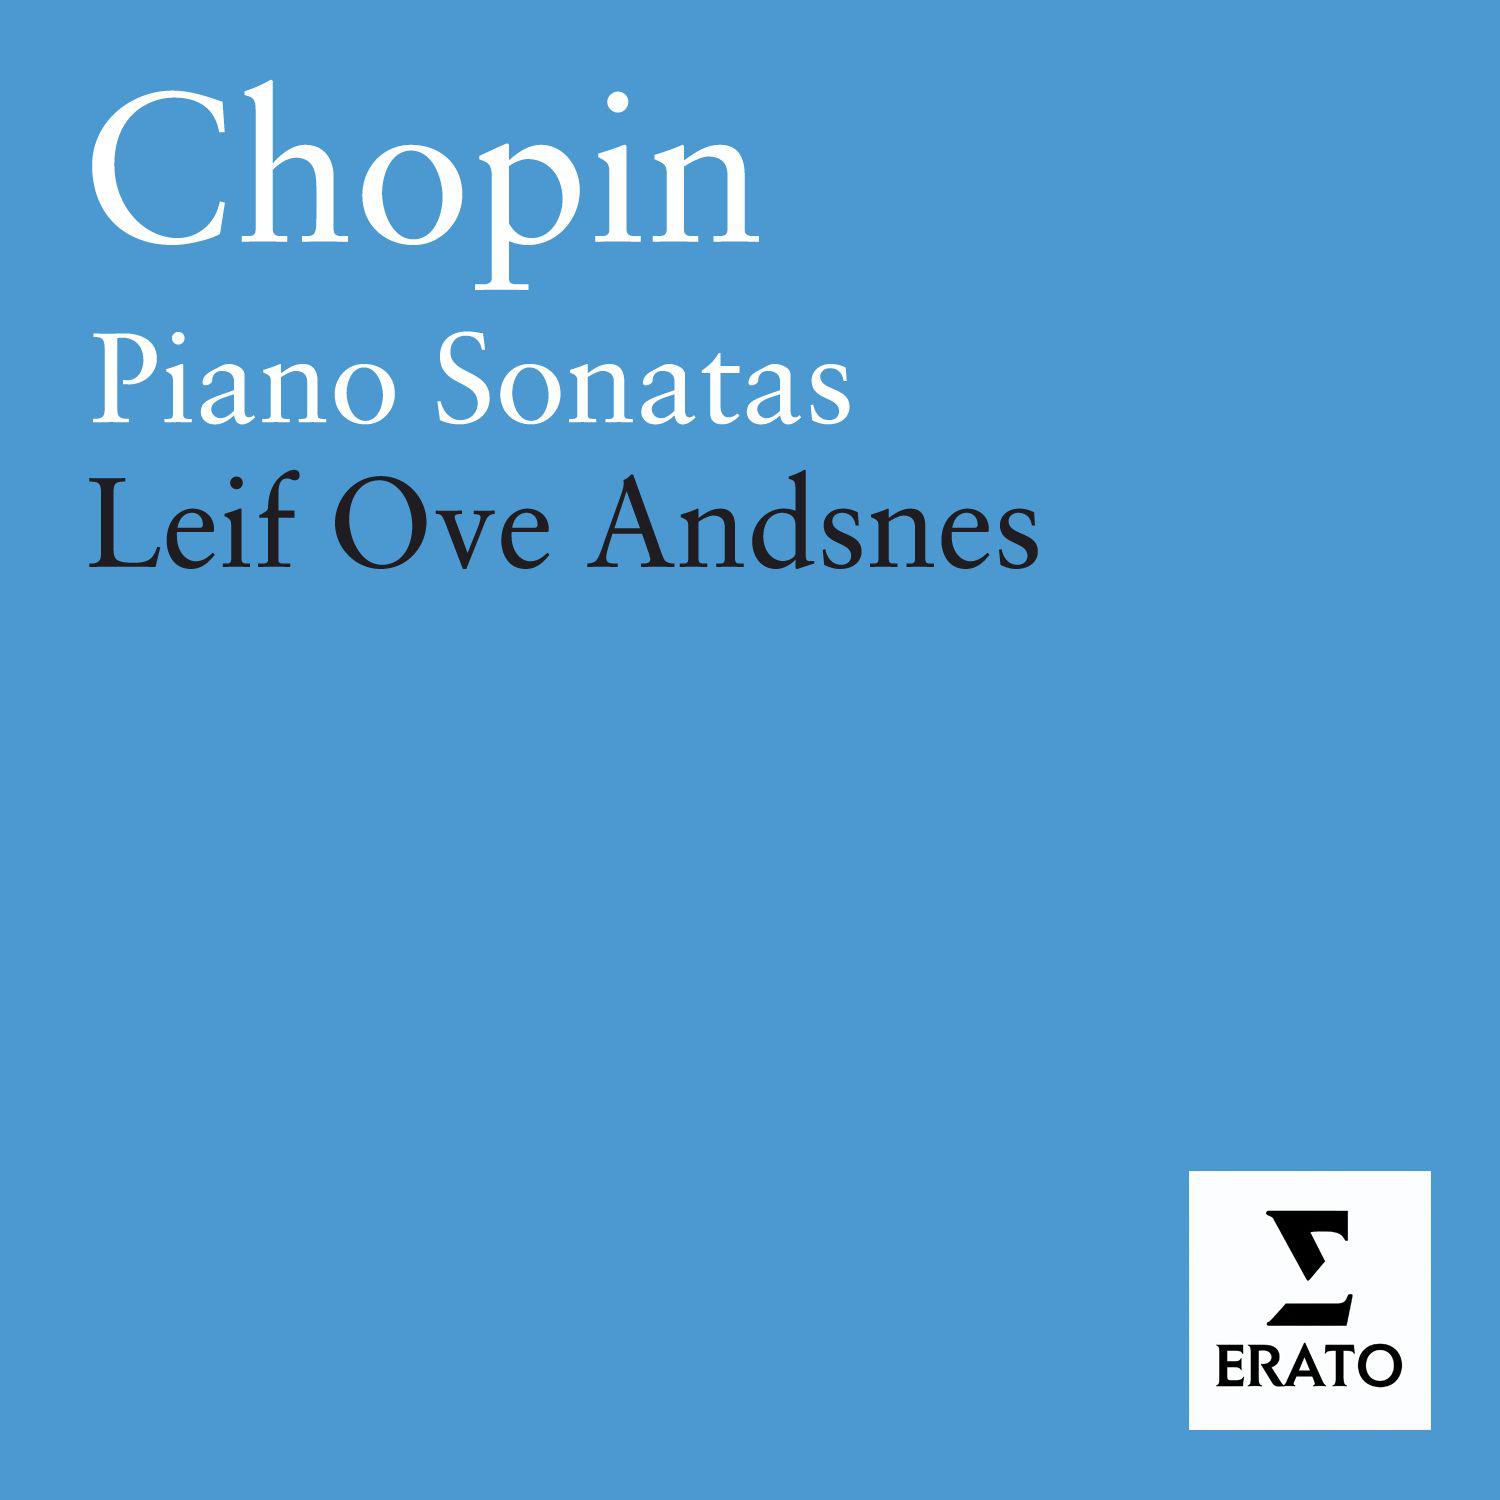 Chopin: Piano Sonatas Nos. 1  3, Mazurkas, Op. 17 É tudes